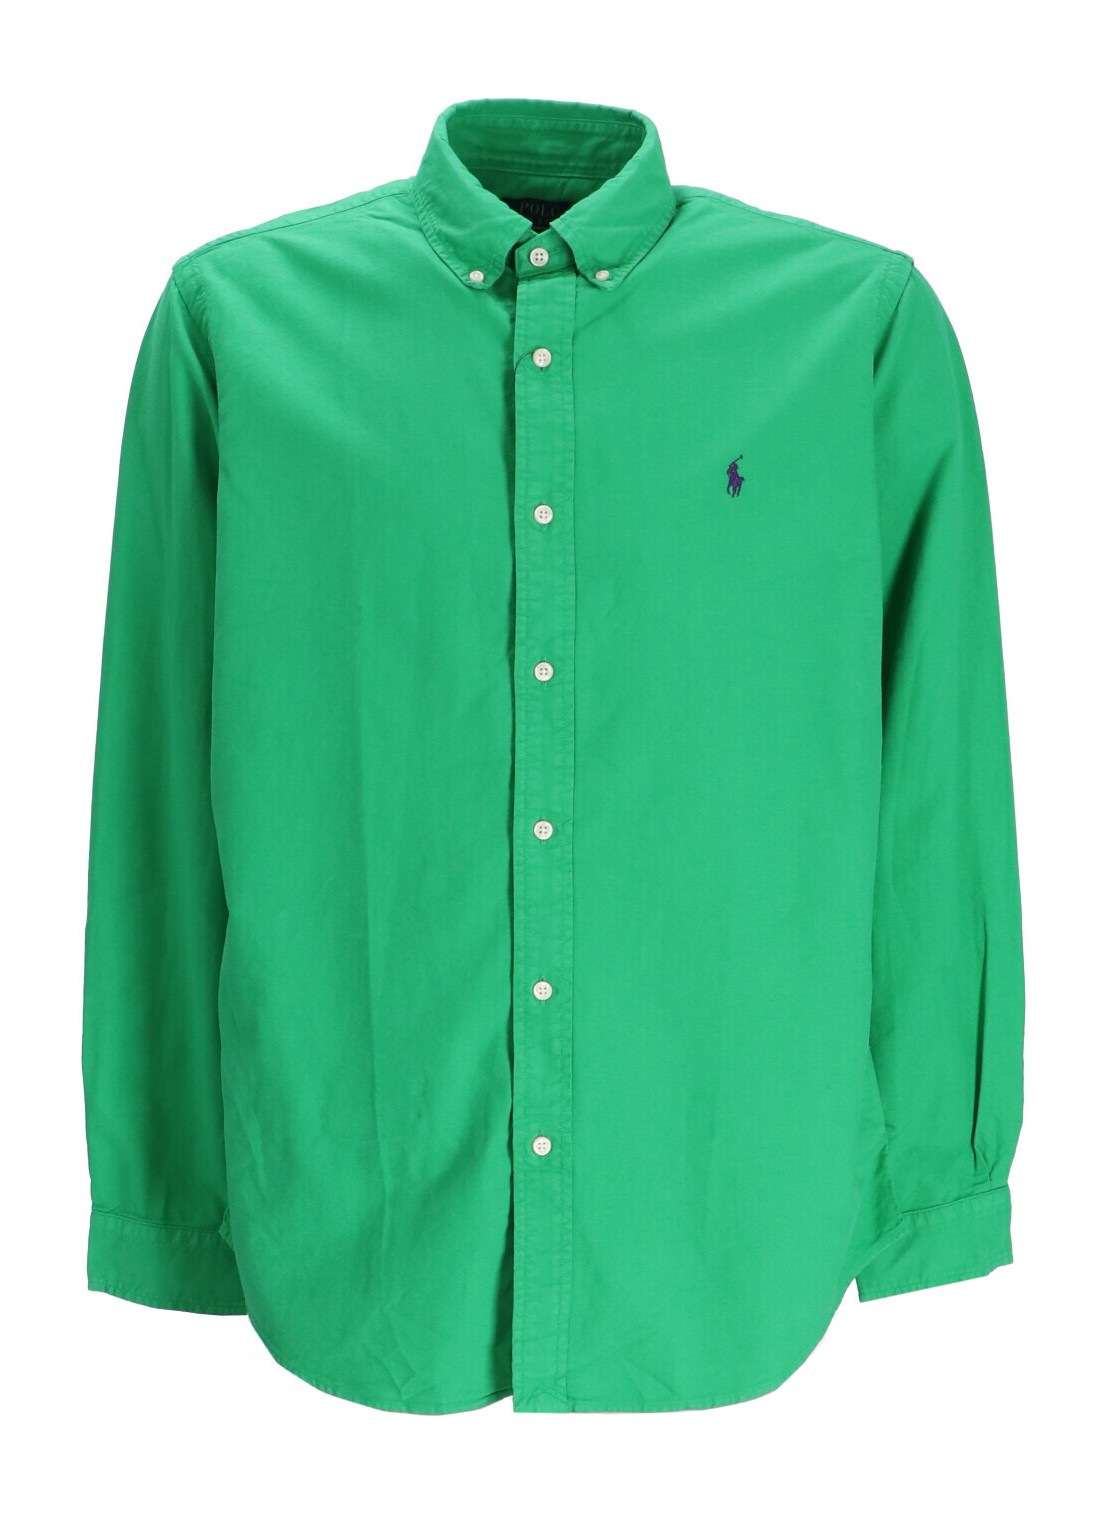 Camiseria polo ralph lauren shirt man cubdppcs-long sleeve-sport shirt 710805564051 preppy green tal